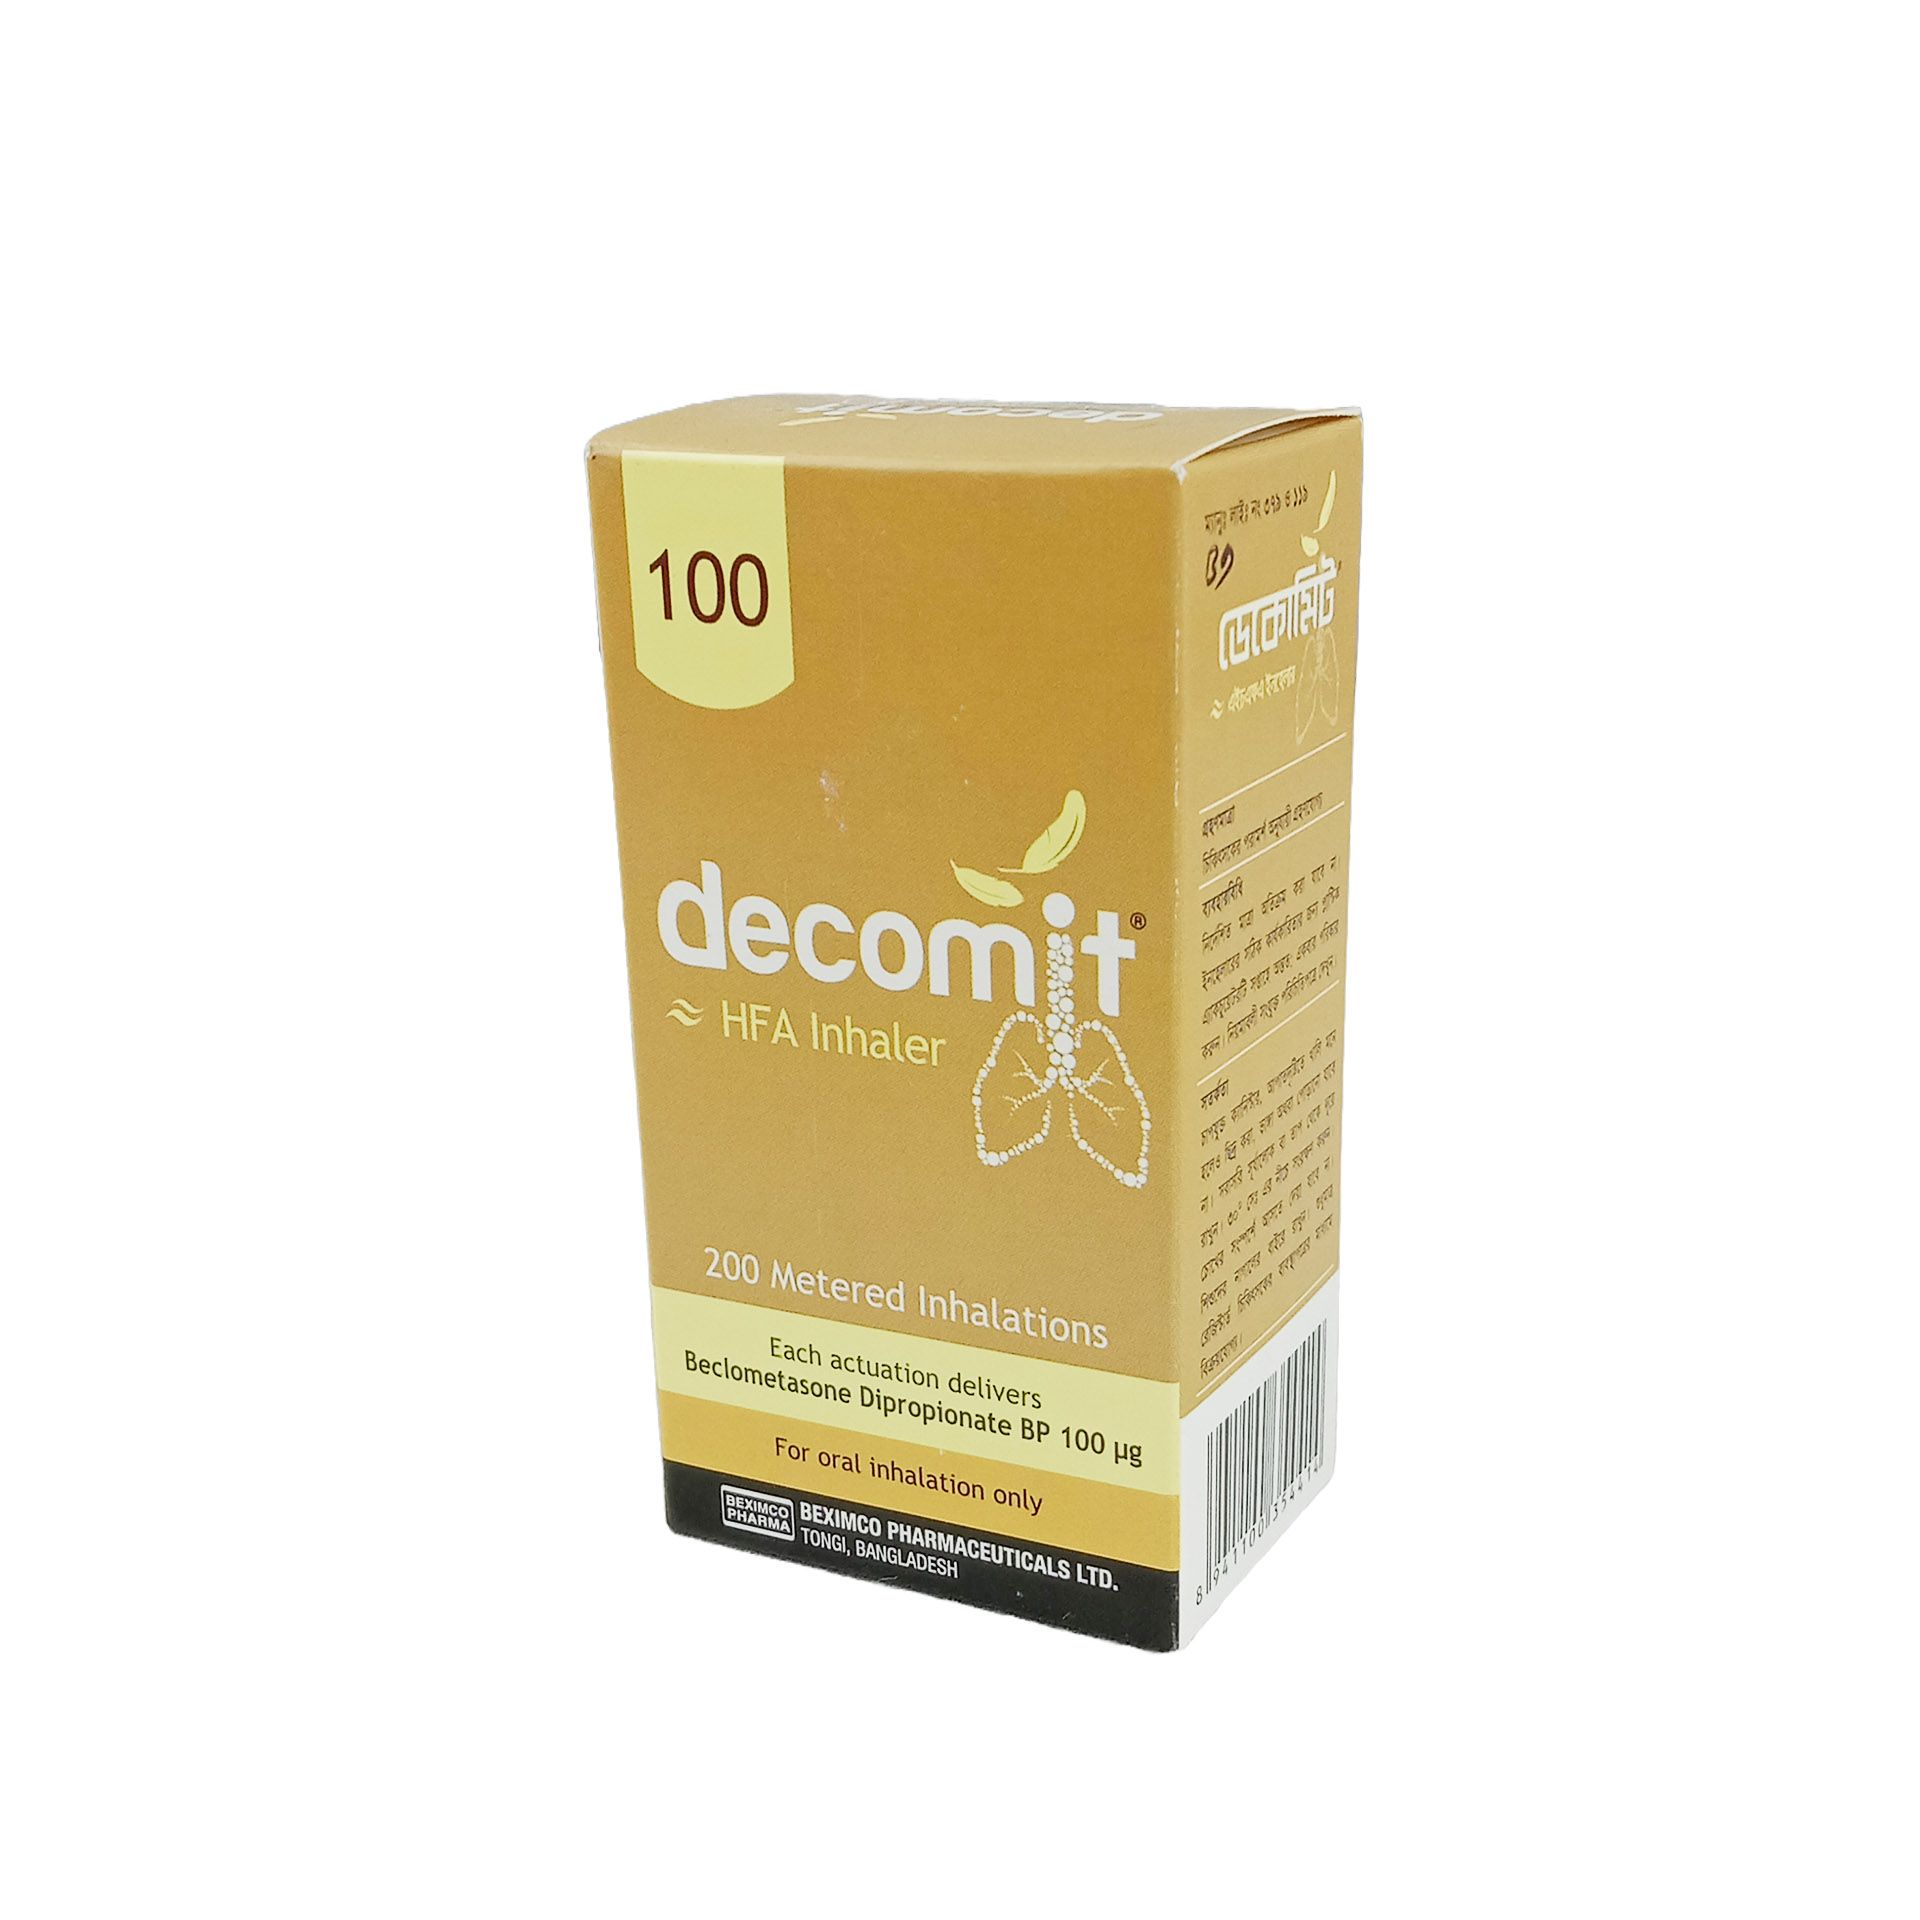 Decomit-100 HFA 100mcg/puff Inhaler